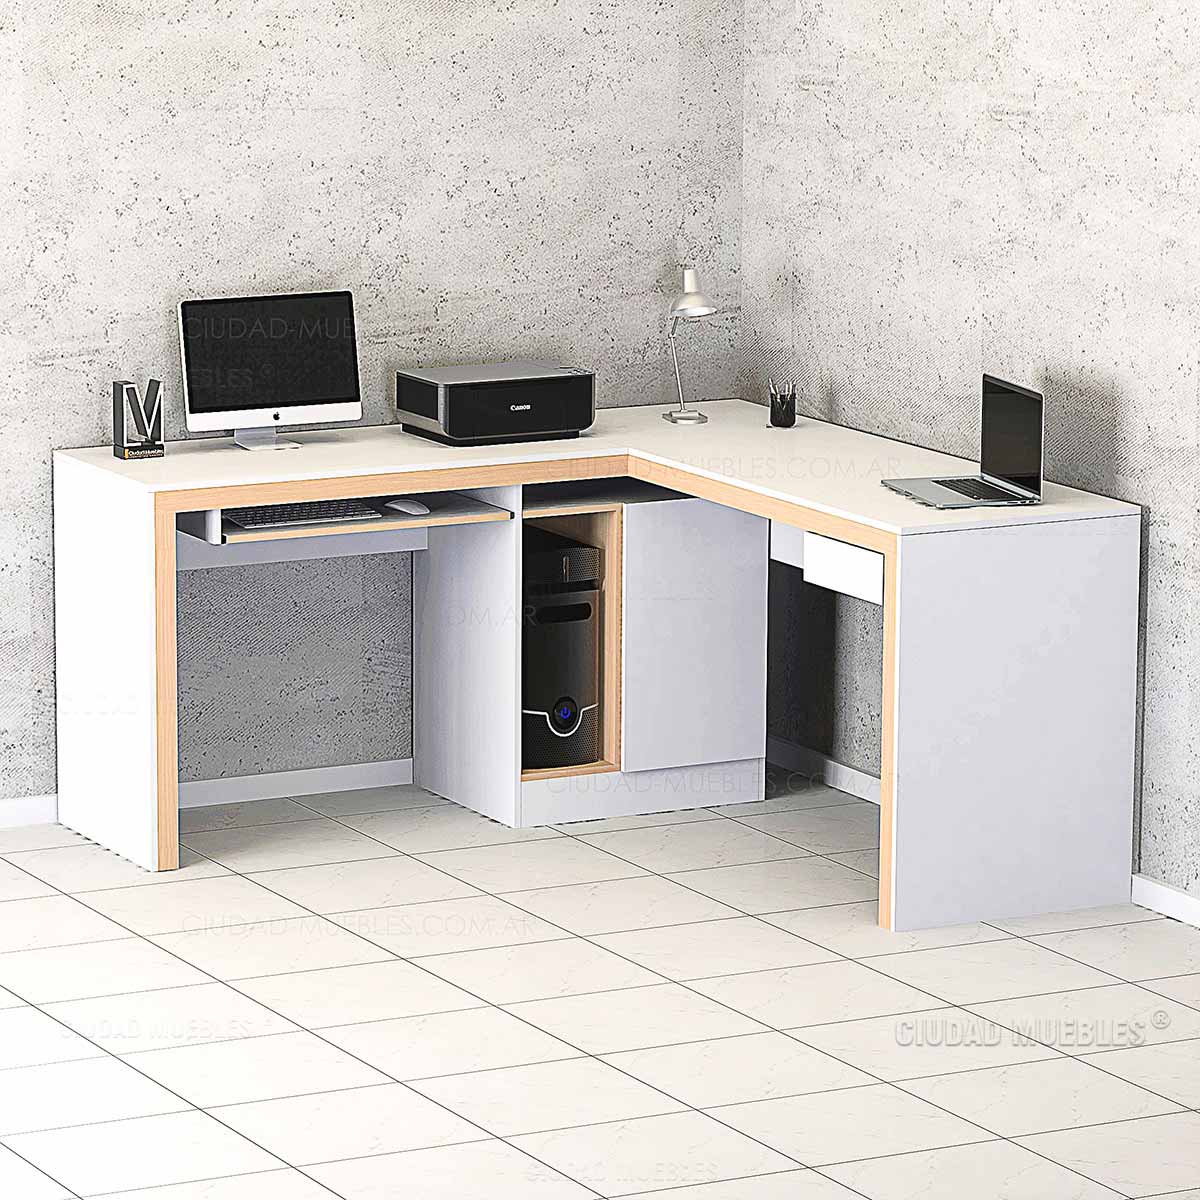 Oficina en el hogar con un escritorio de esquina, estanterías y